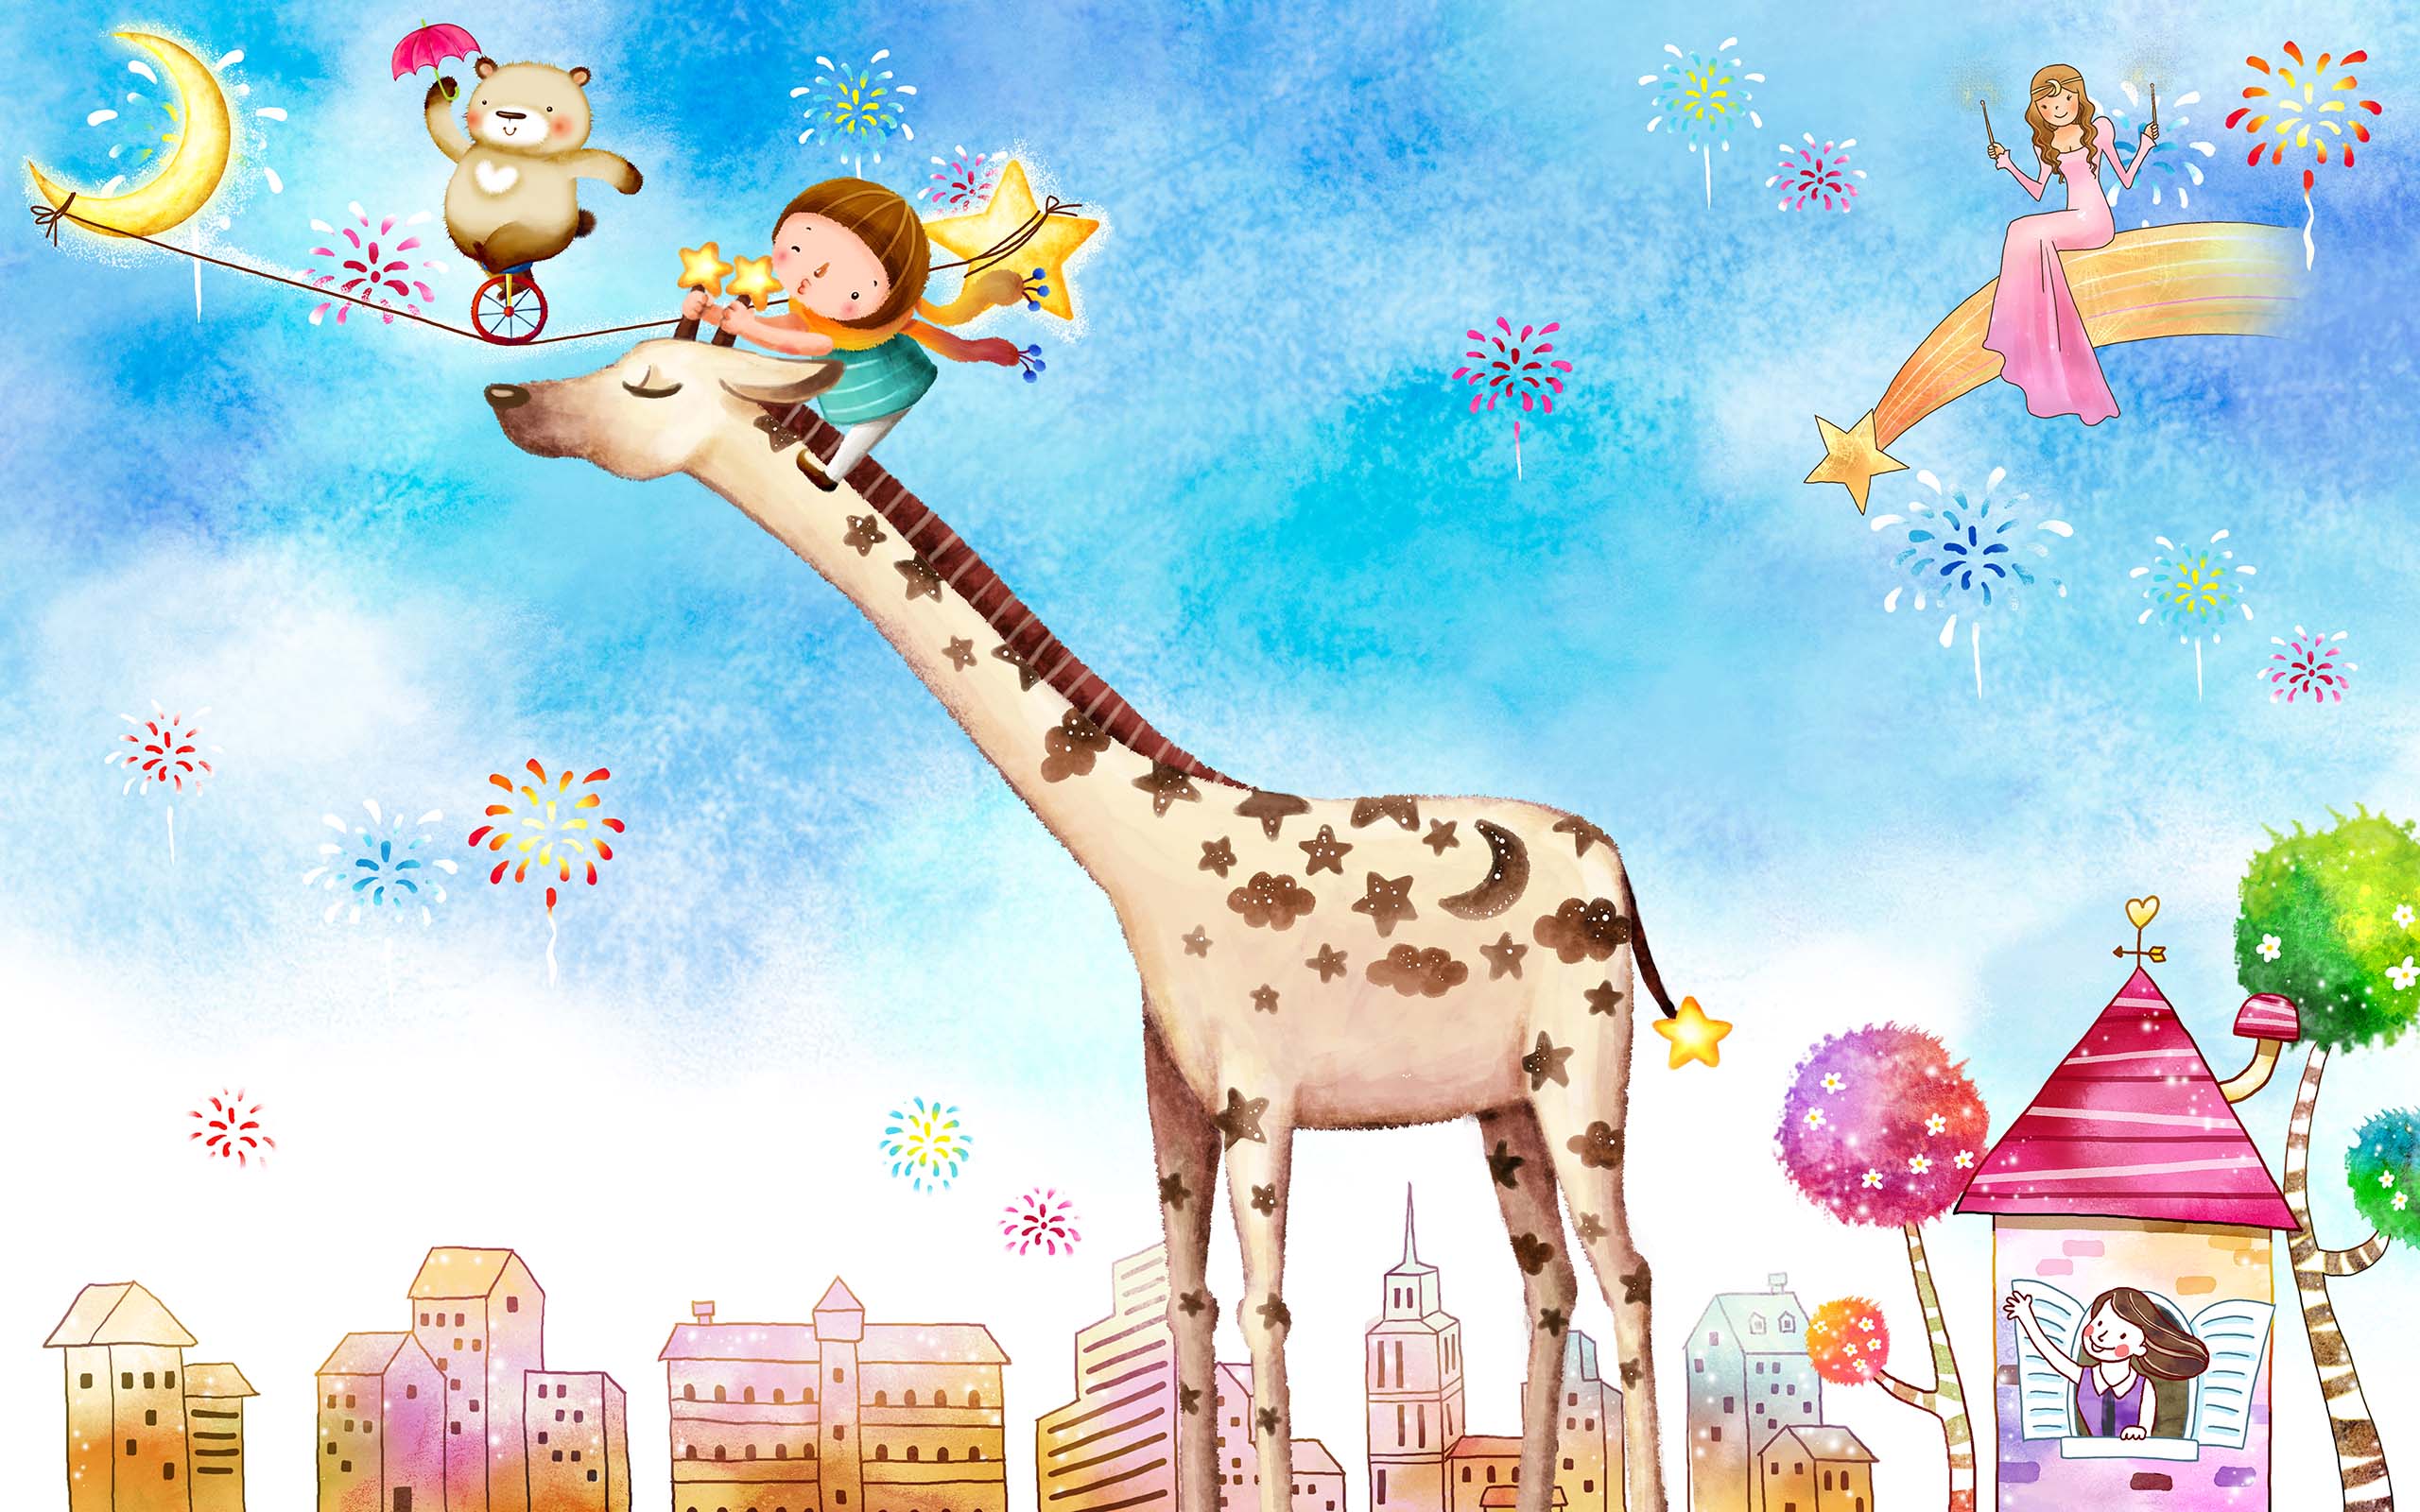 3D Cartoon Giraffe 1443 Wall Murals